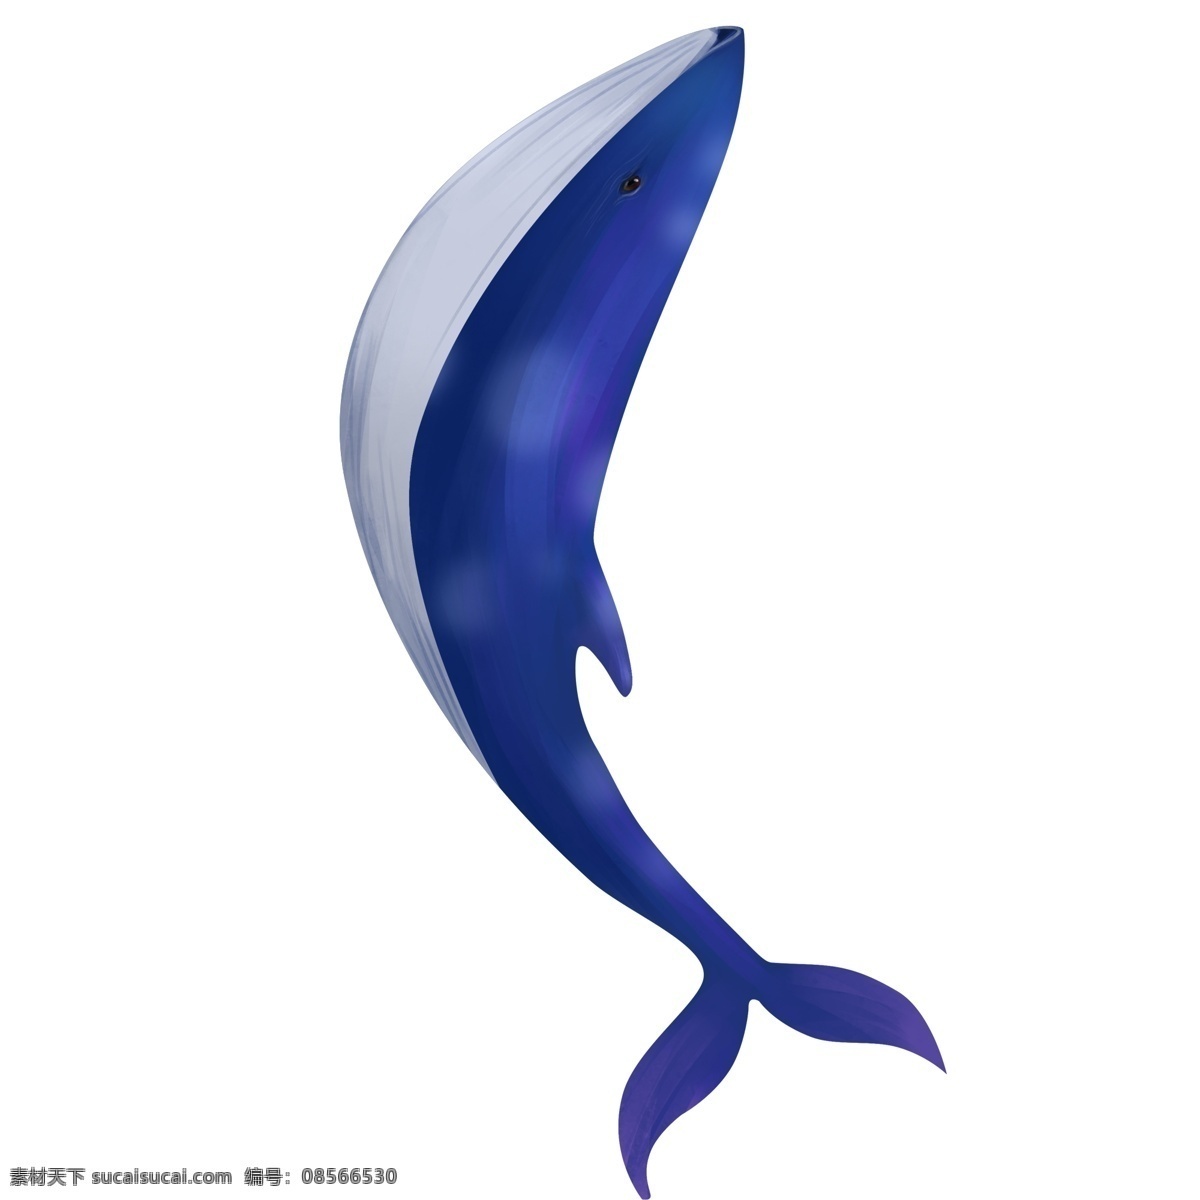 蓝色 海洋 鲸鱼 插画 动物 卡通 彩色 小清新 创意 手绘 绘画元素 现代 简约 装饰 图案